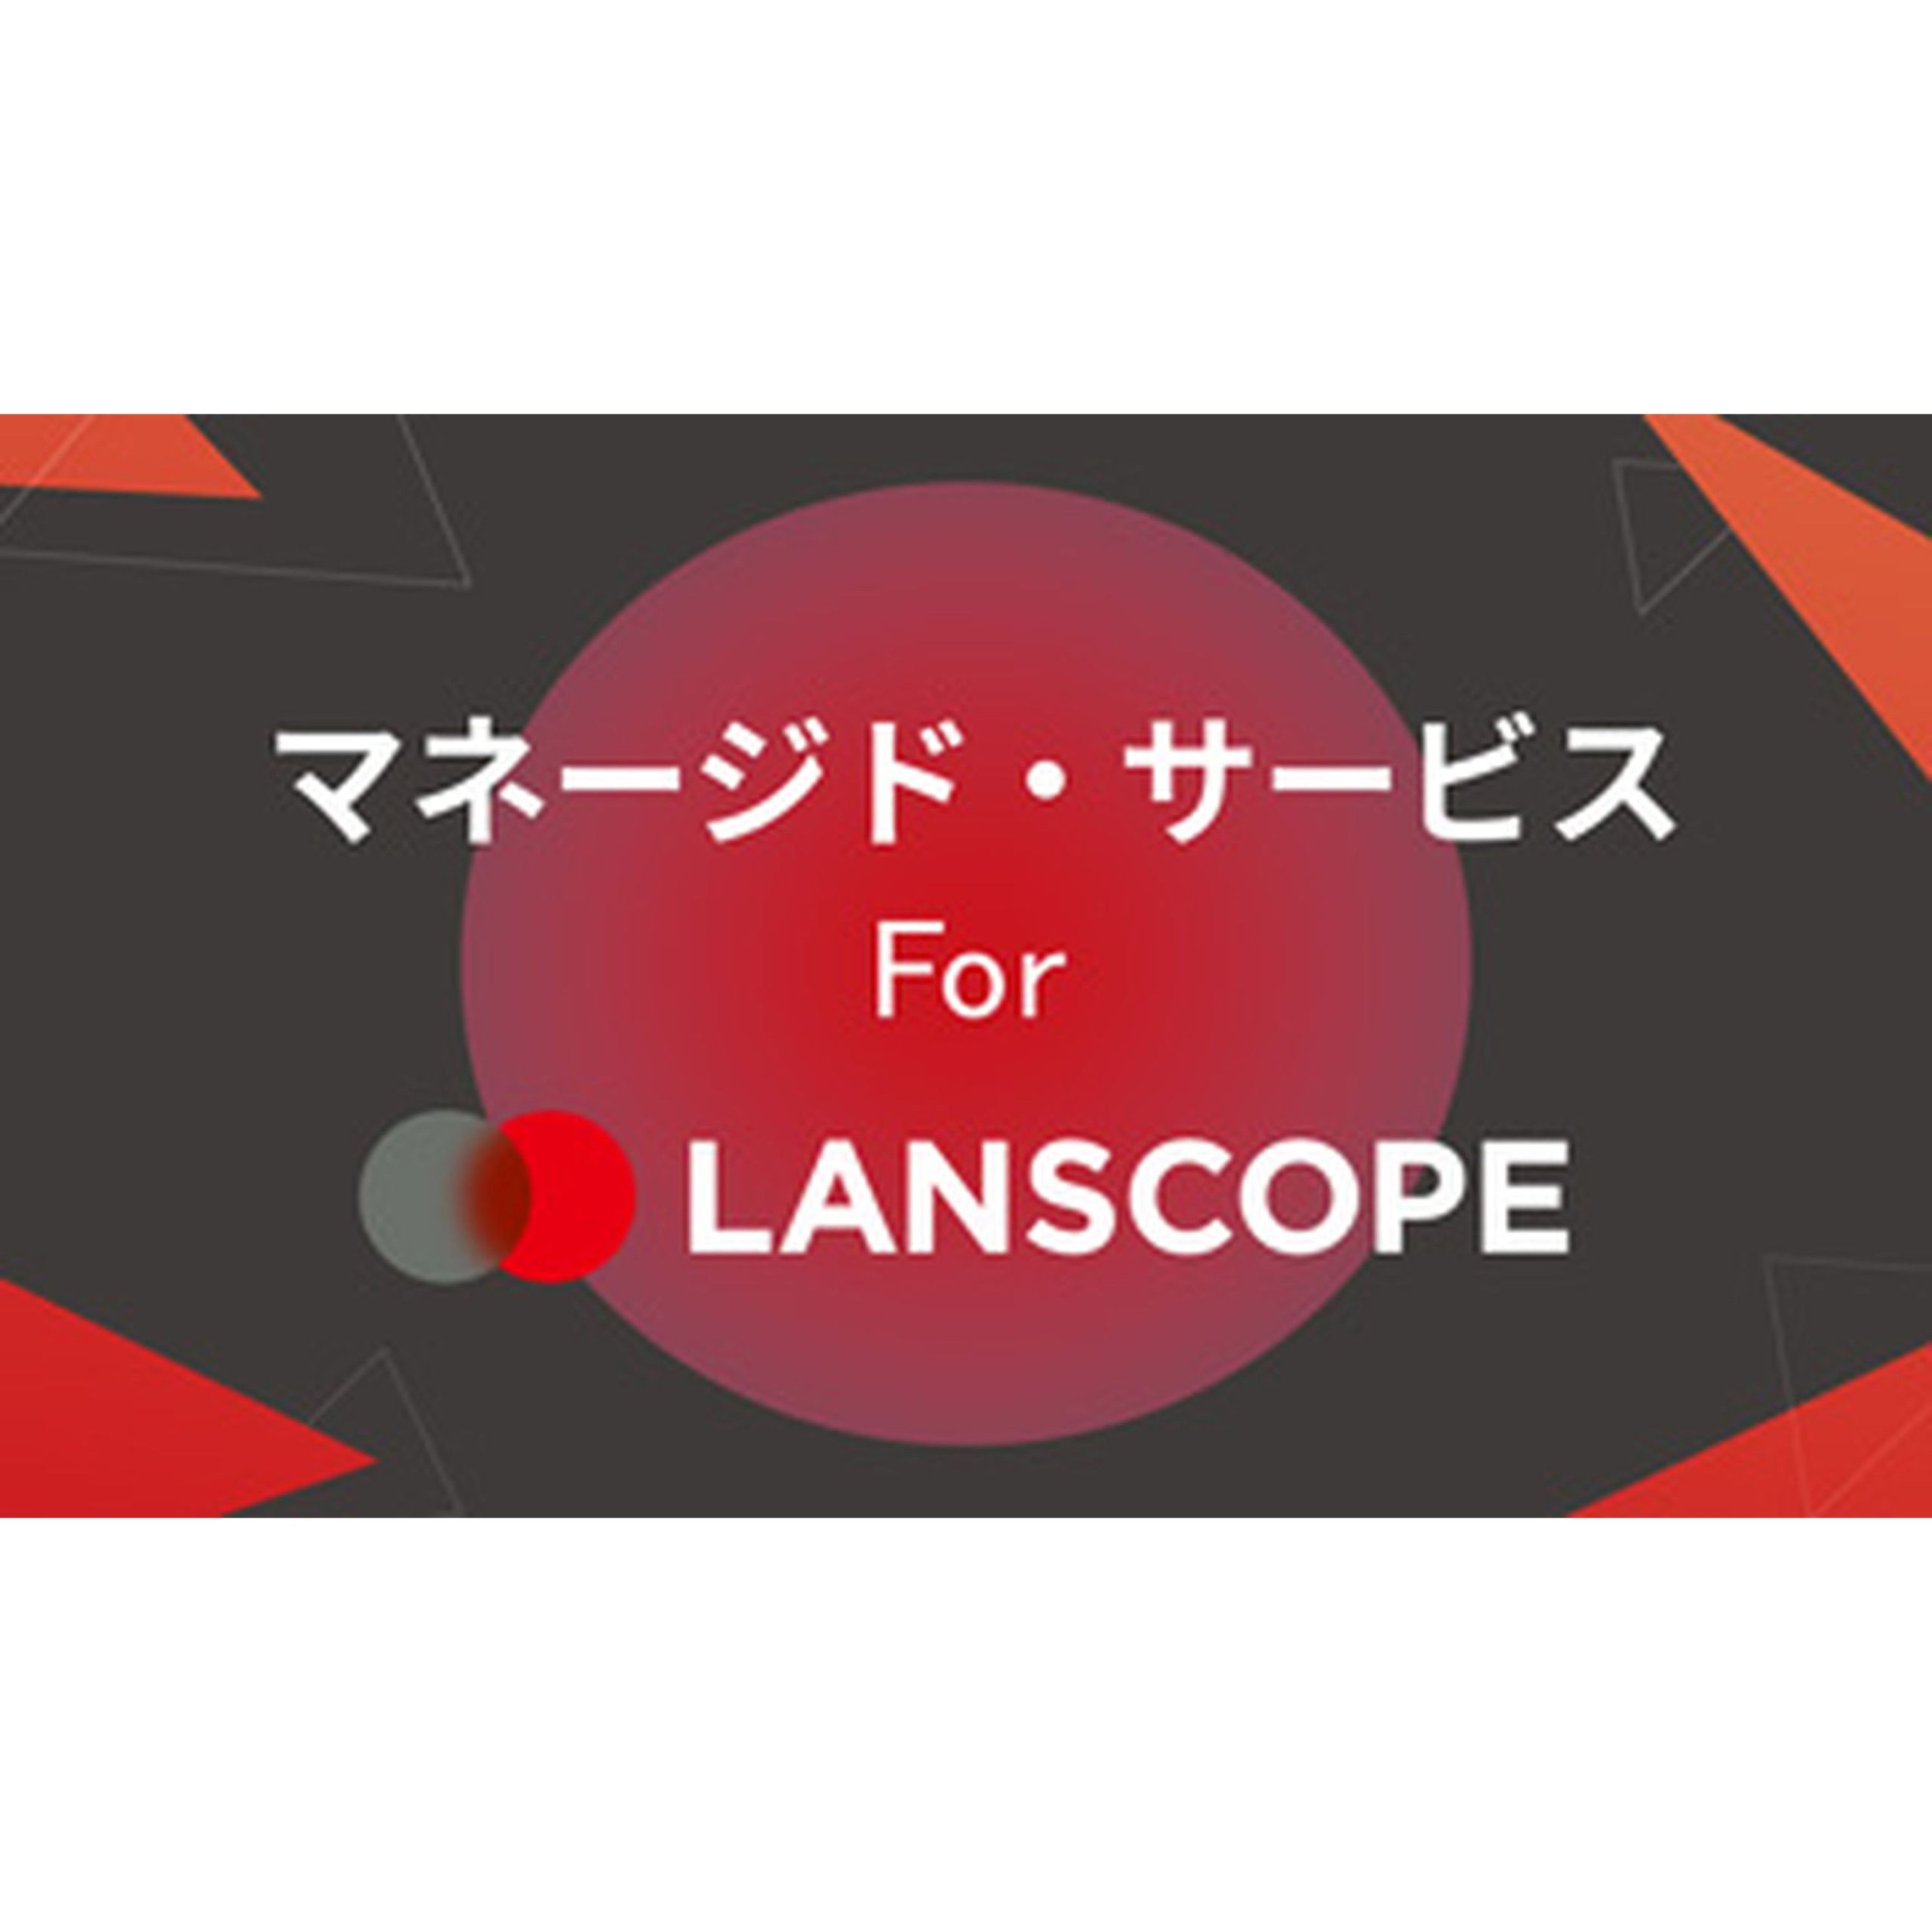 マネージド・サービス For LANSCOPE